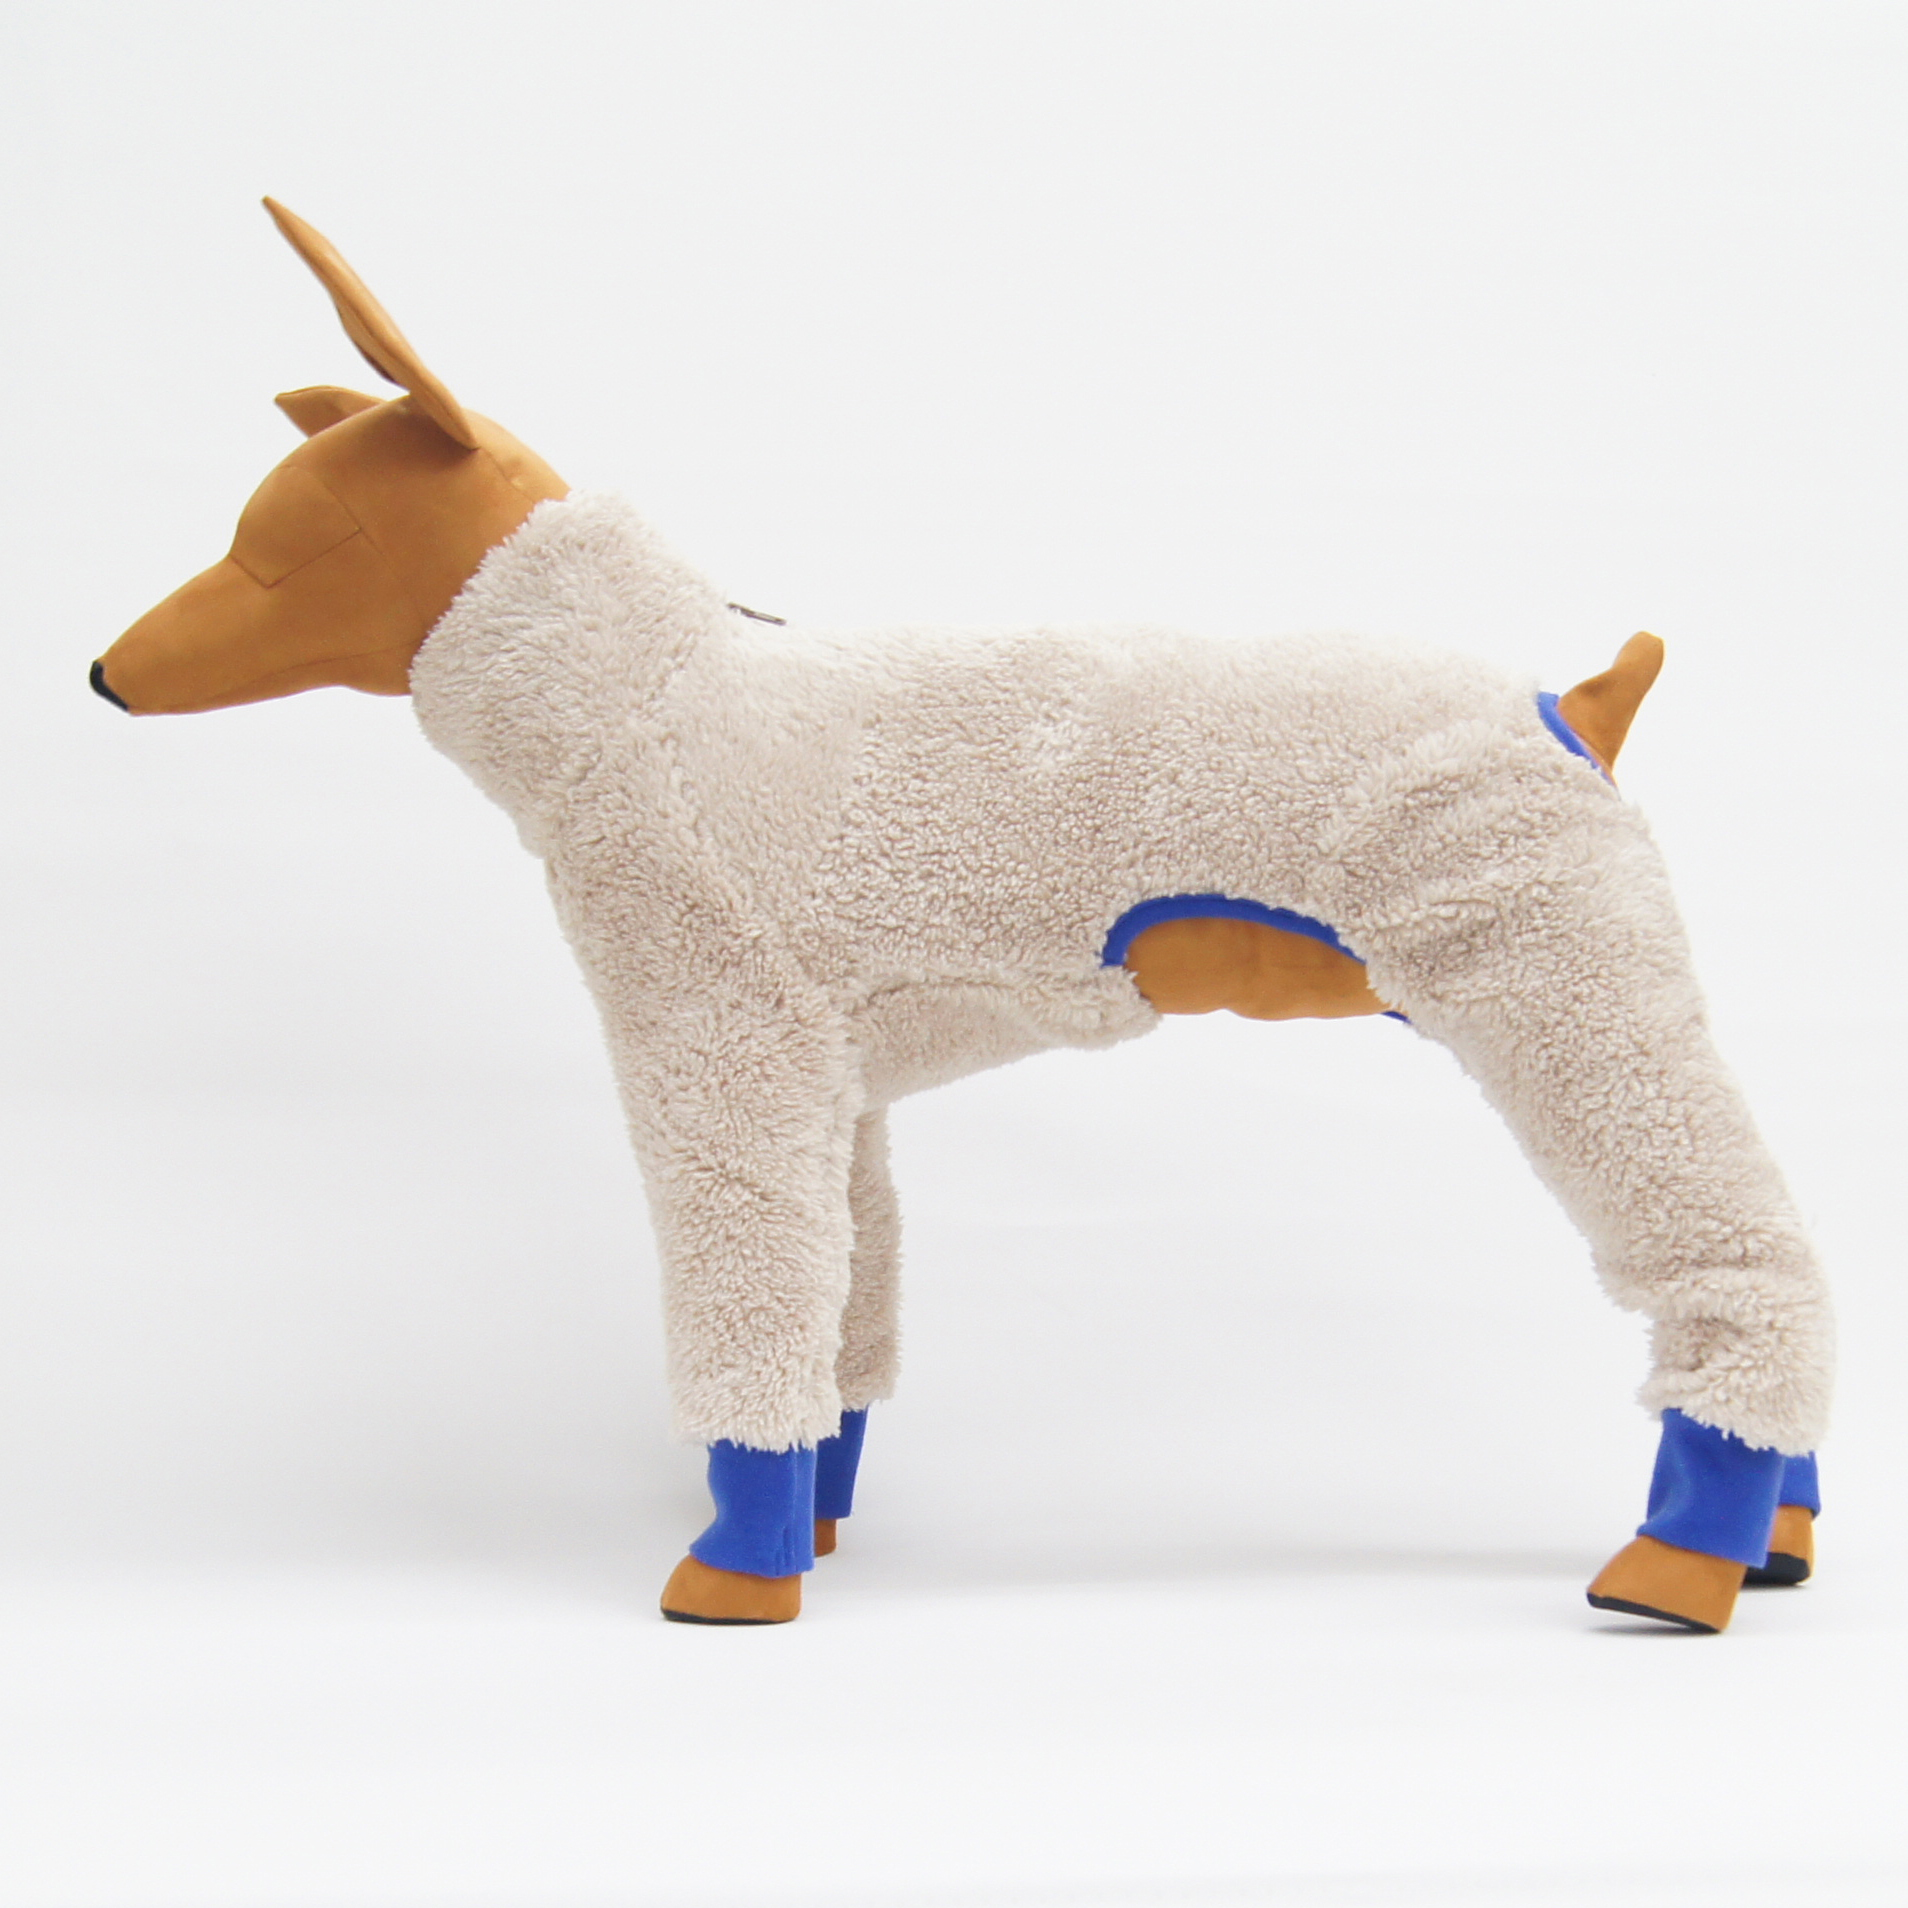 タイトセパレートロンパース型紙 eco印刷 胴長小型犬S~M LuSEcX2k2g, 裁縫材料